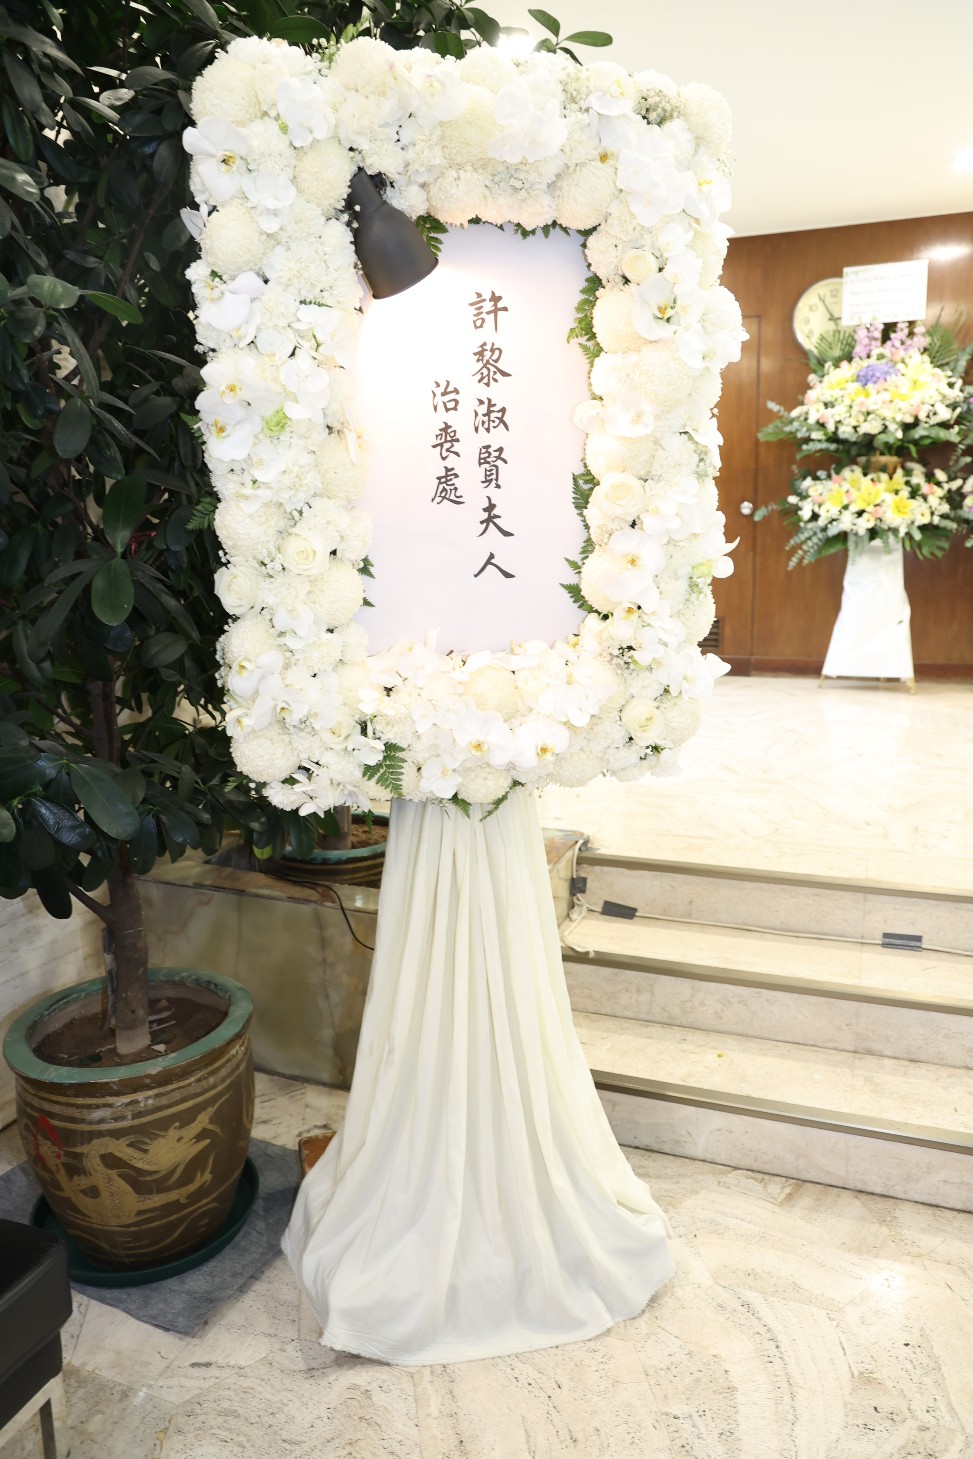 黎淑賢於香港殯儀館設靈。